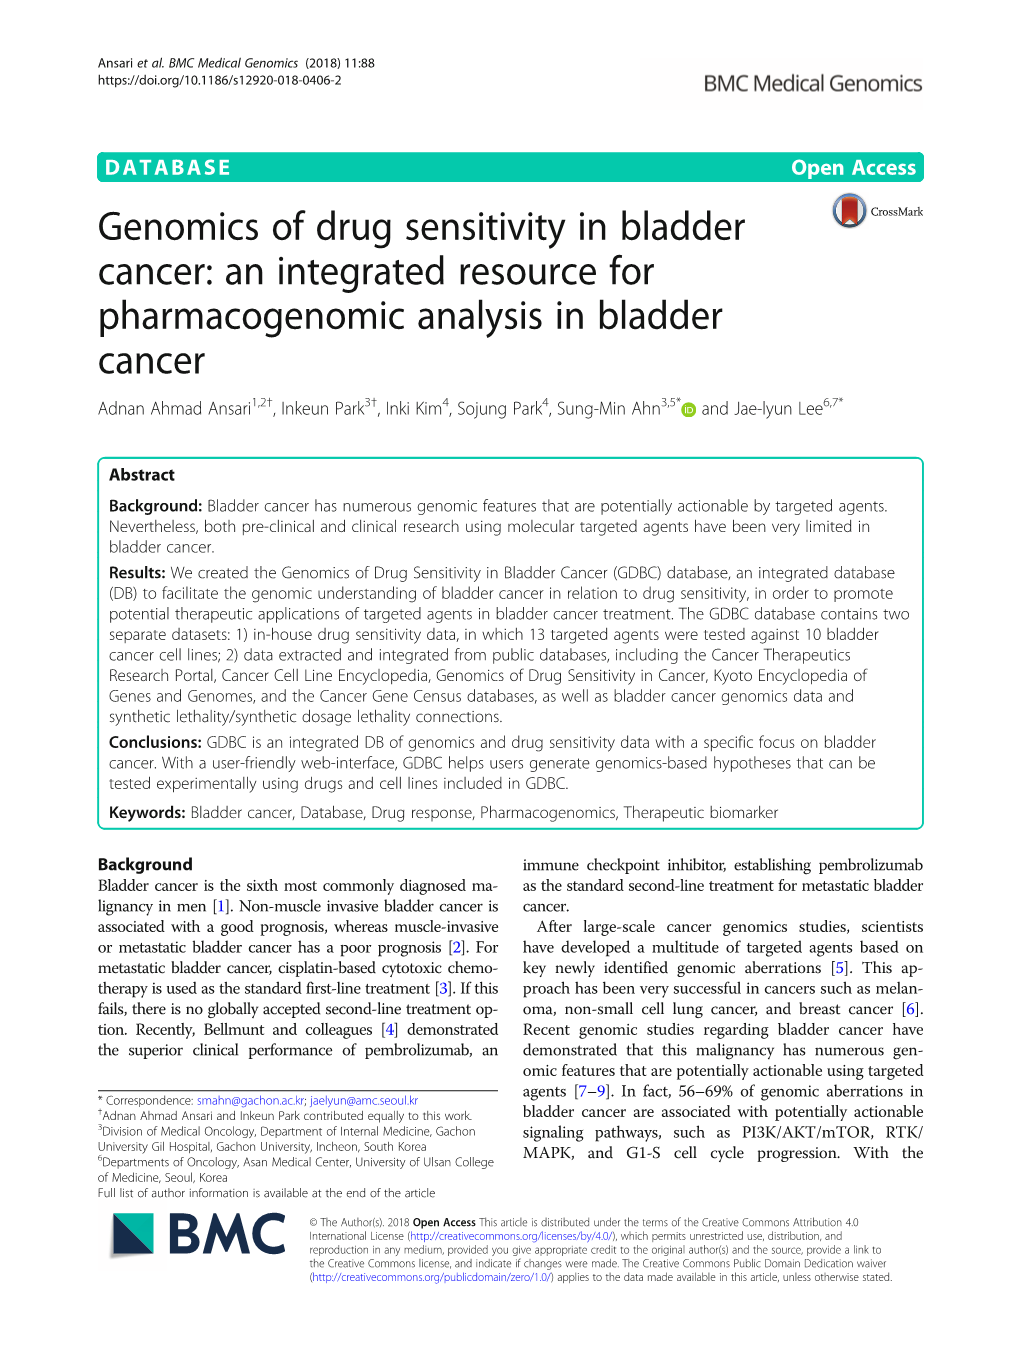 Genomics of Drug Sensitivity in Bladder Cancer